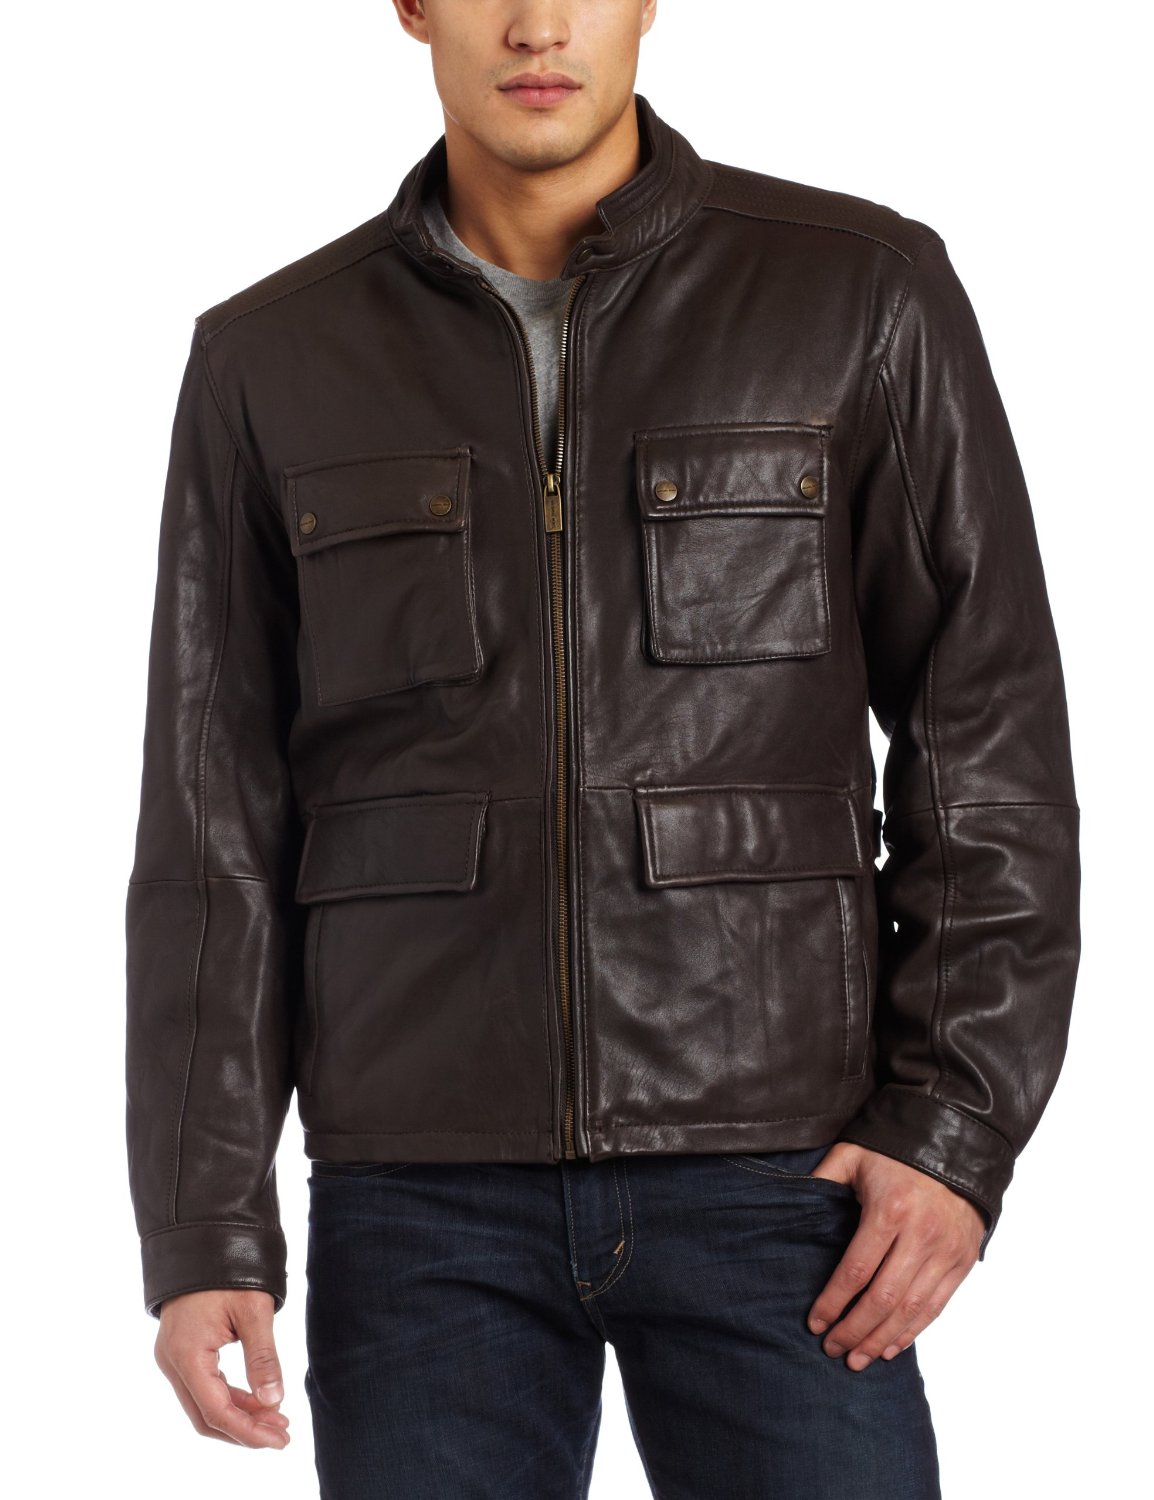 Handmade Custom New Men Stylish Front Four Pocket Style Leather Jacket ...